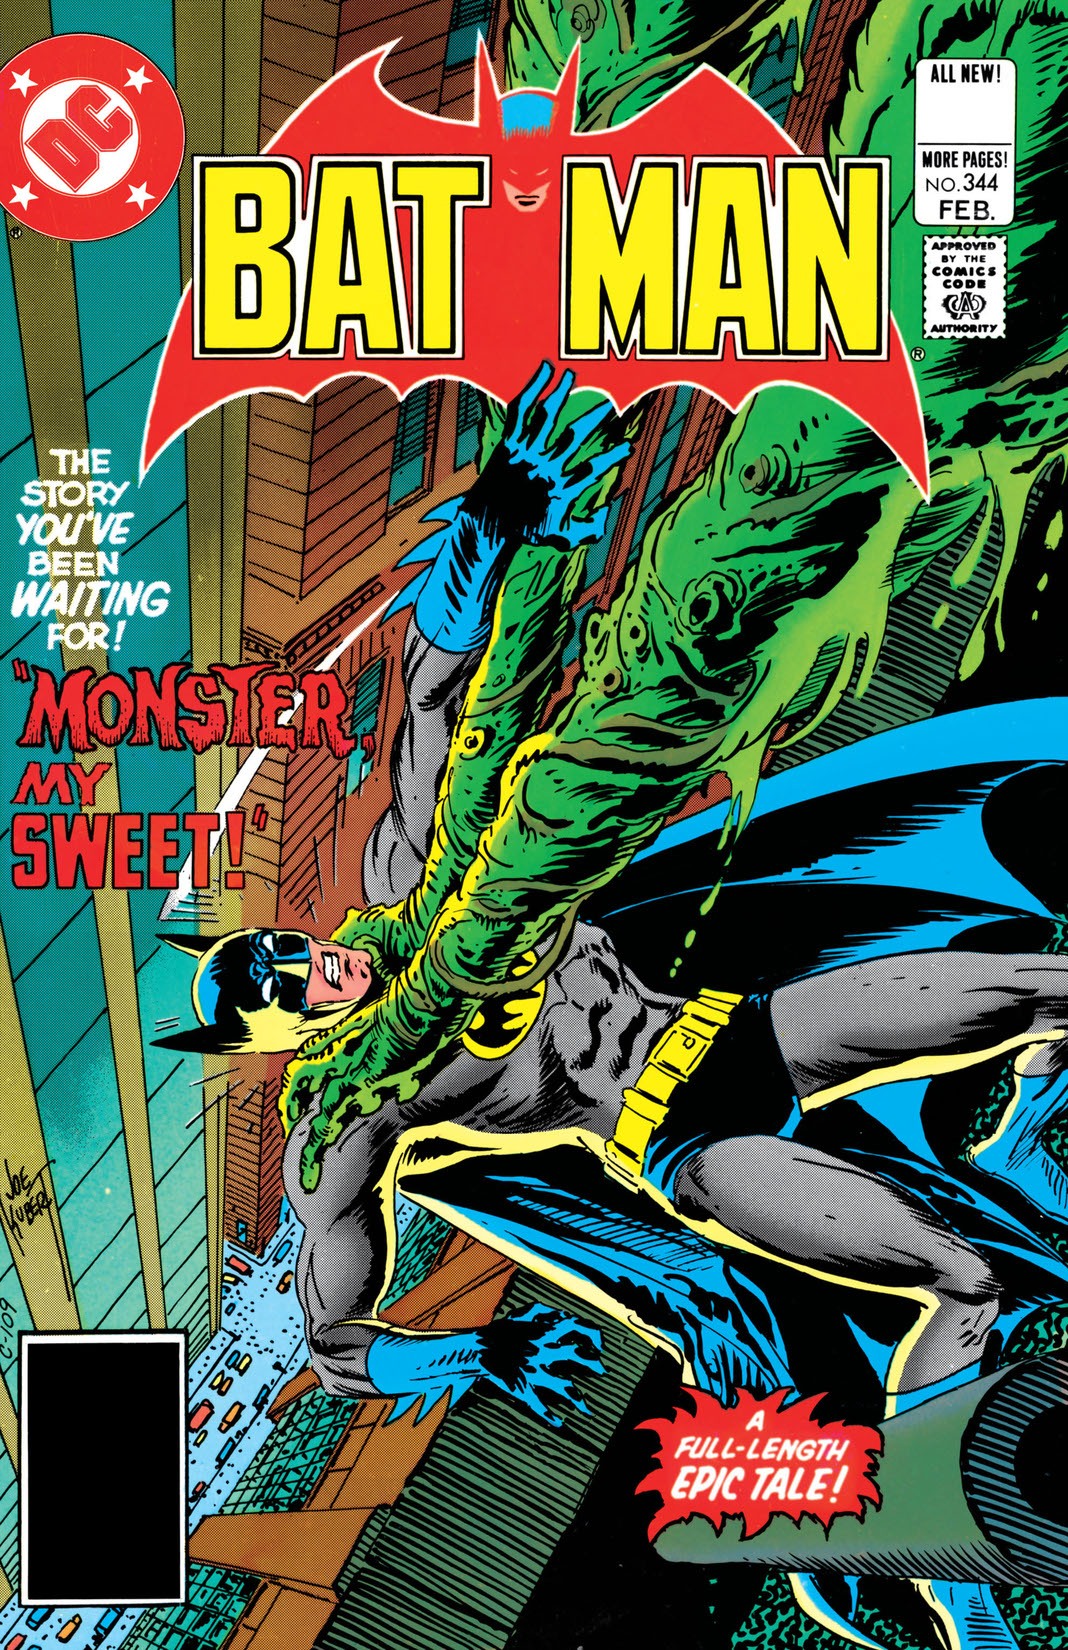 Batman (1940-) #344 preview images